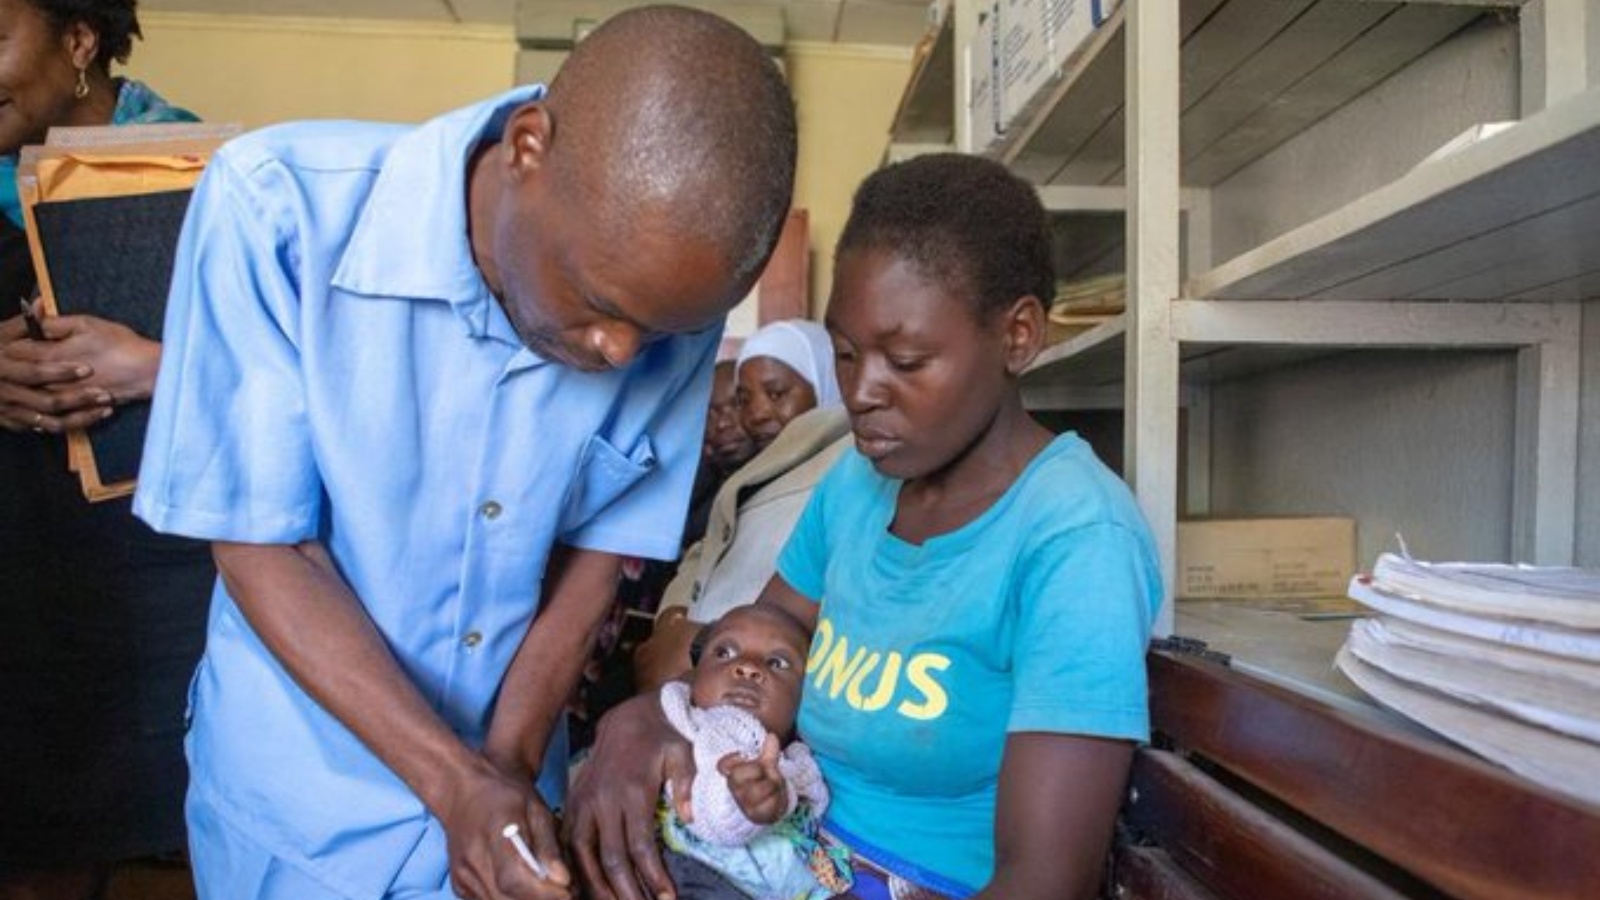 طبيب يعطي طفلًا لقاح الملاريا في أحد المراكز الصحية في أفريقيا، في صورة من صفحة منظمة الصحة العالمية في تويتر.